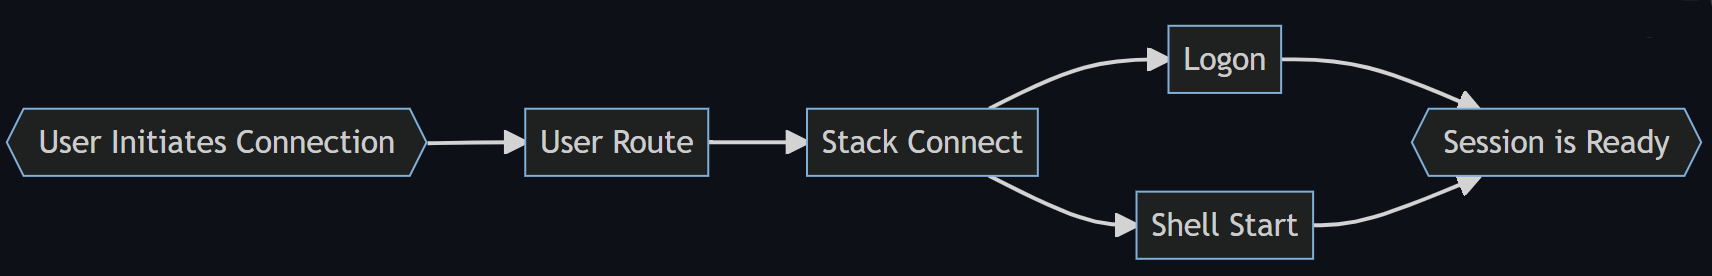 流程图显示了四个阶段的登录过程：用户路由，堆栈连接，登录，以及使用 Shell 启动并准备。